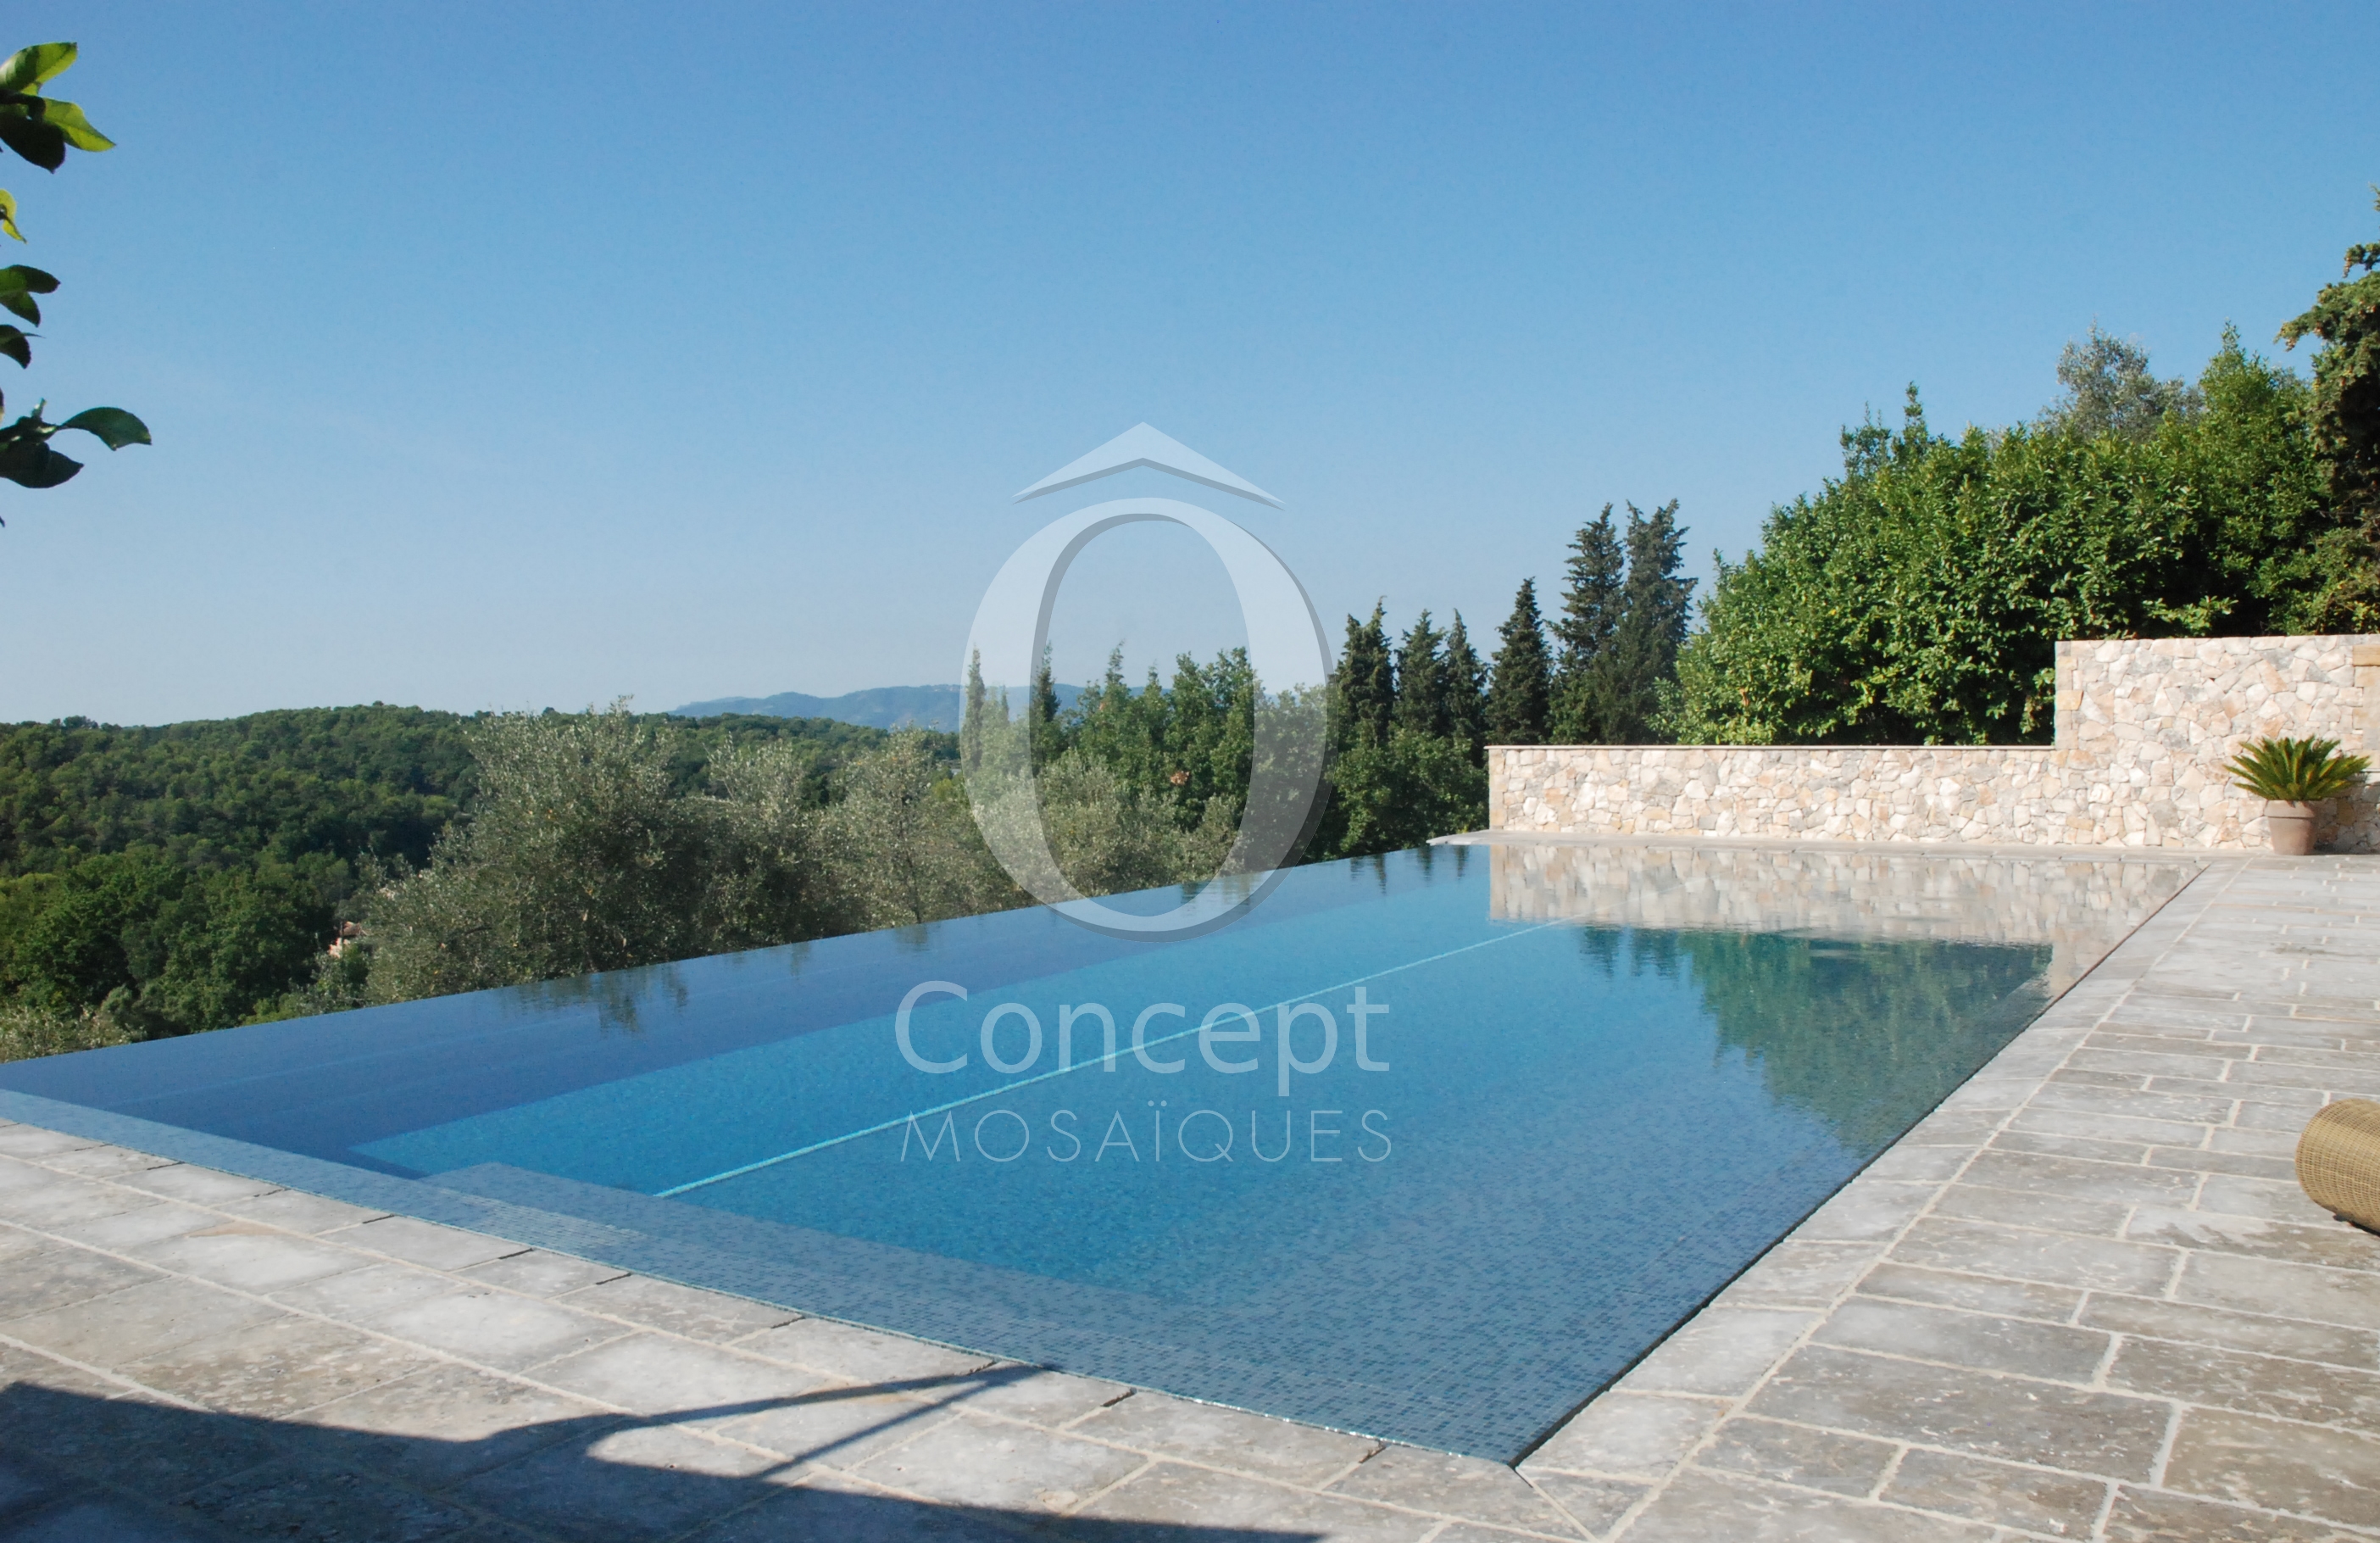 A Mediterranean blue mosaic pool